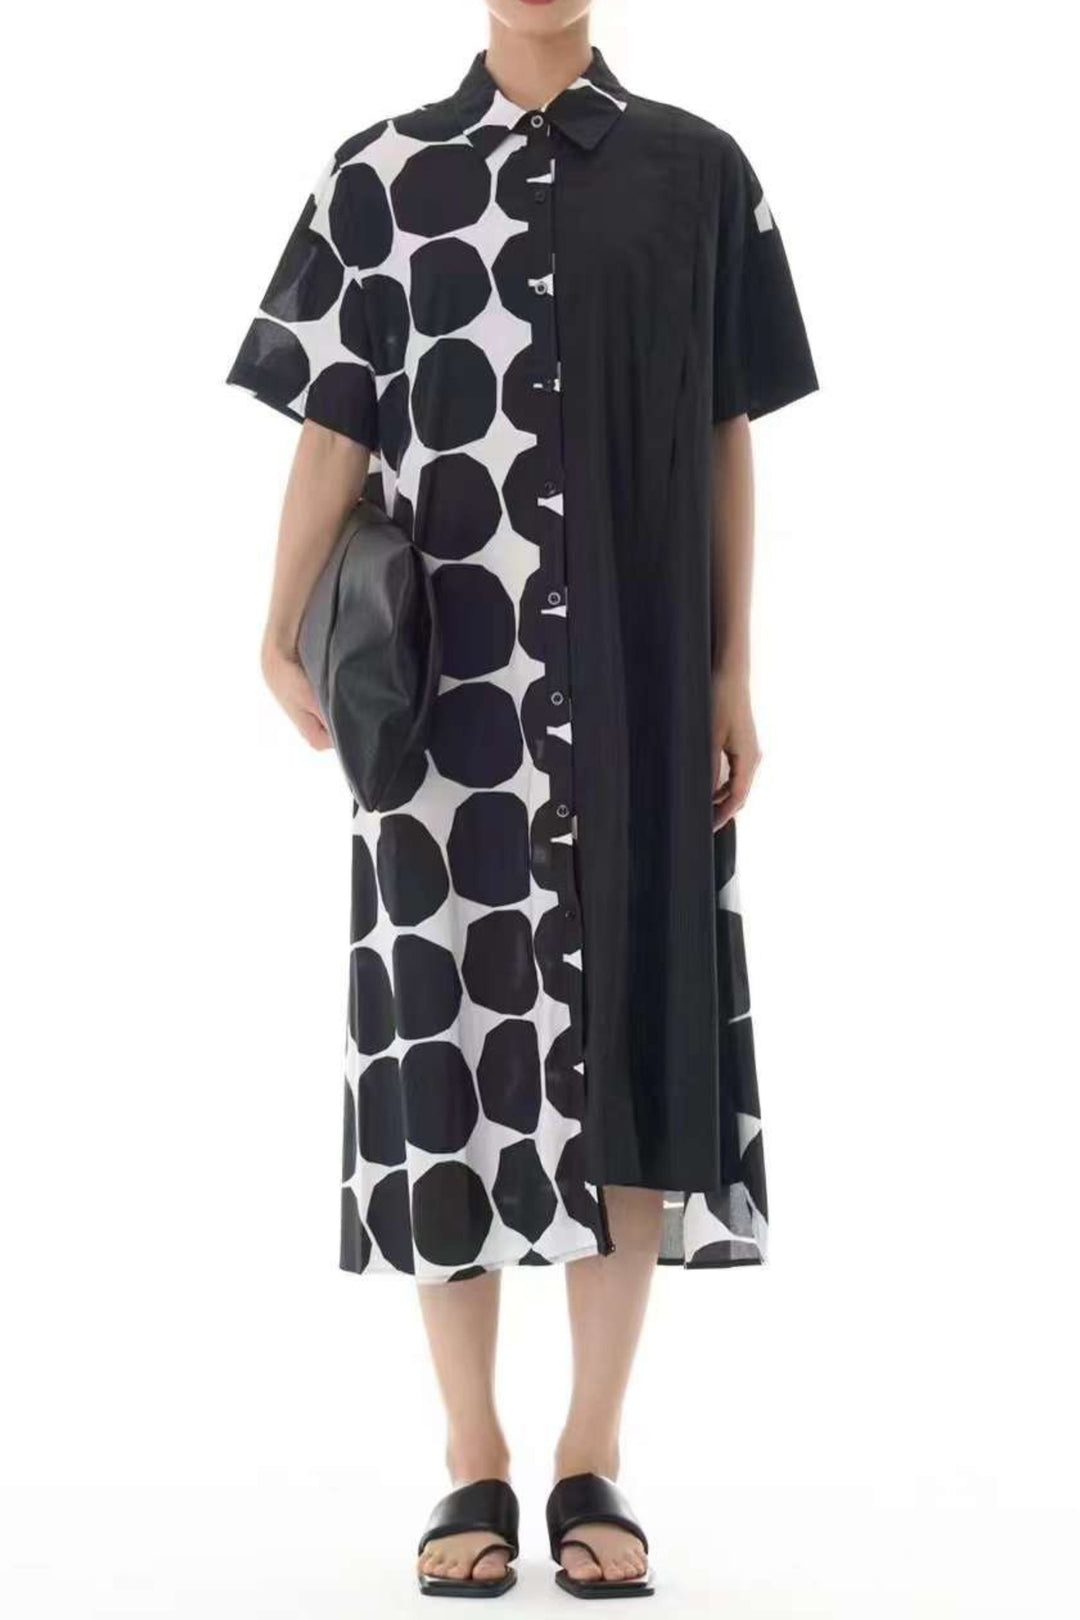 Oversized polka dot shirt dress for women